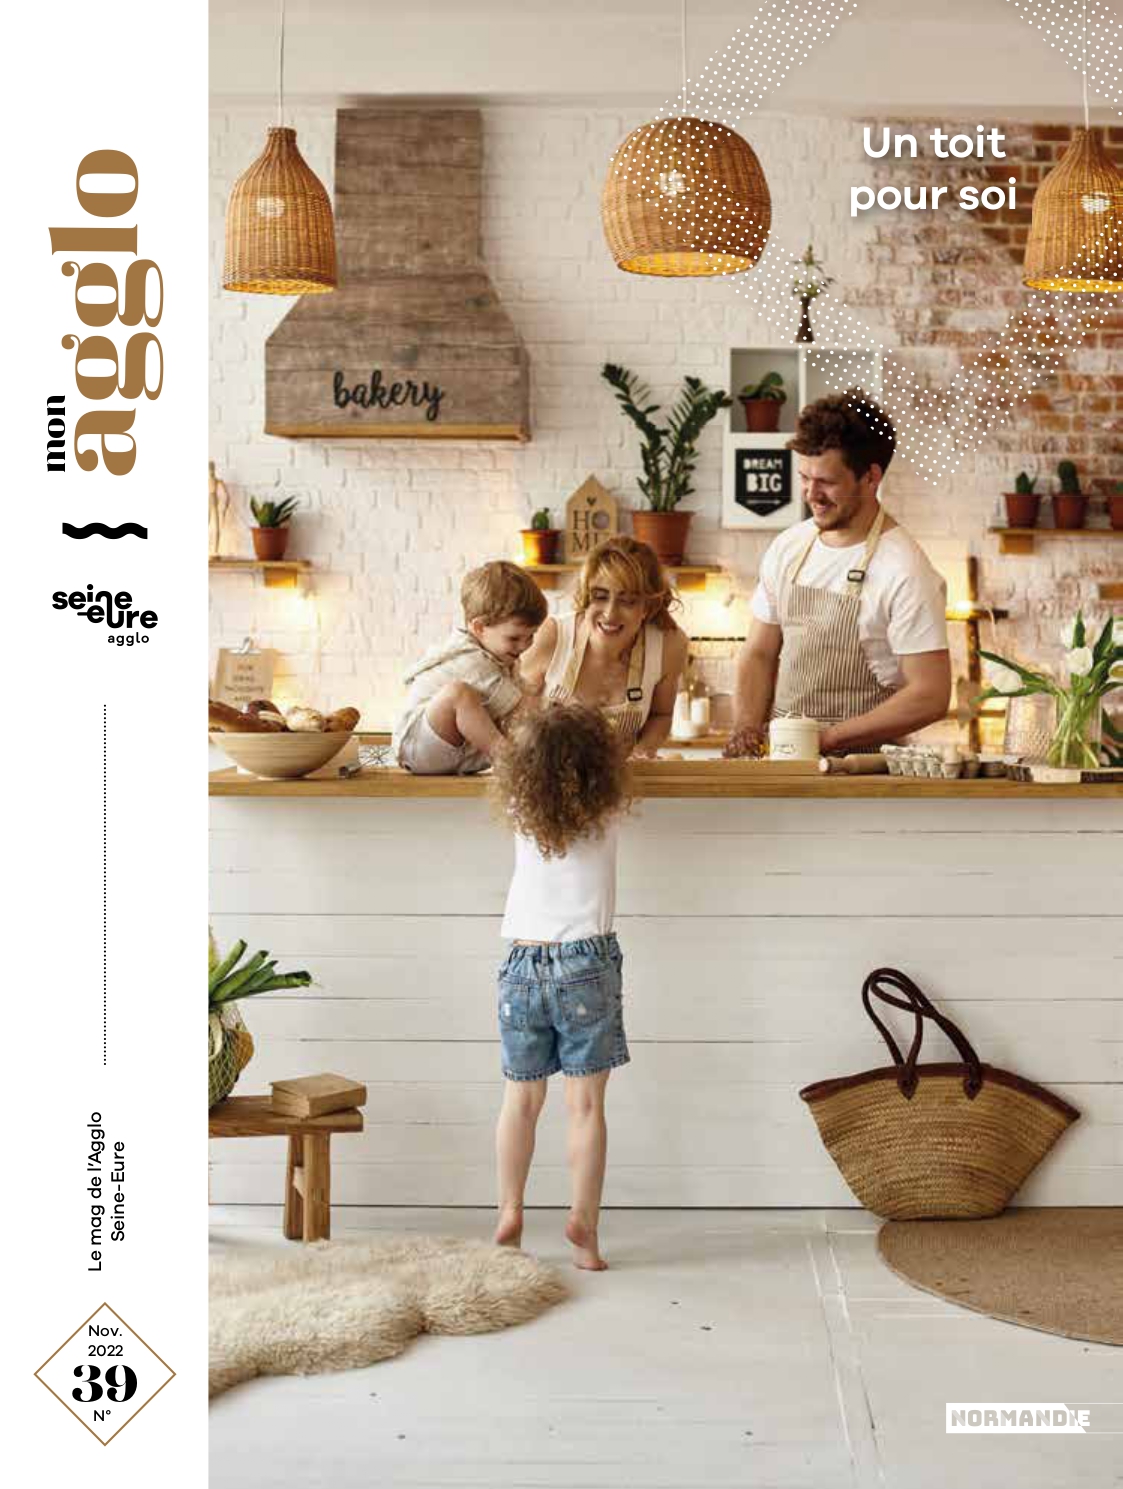 Magazine de l’Agglo Seine-Eure n°39 – Novembre 2022